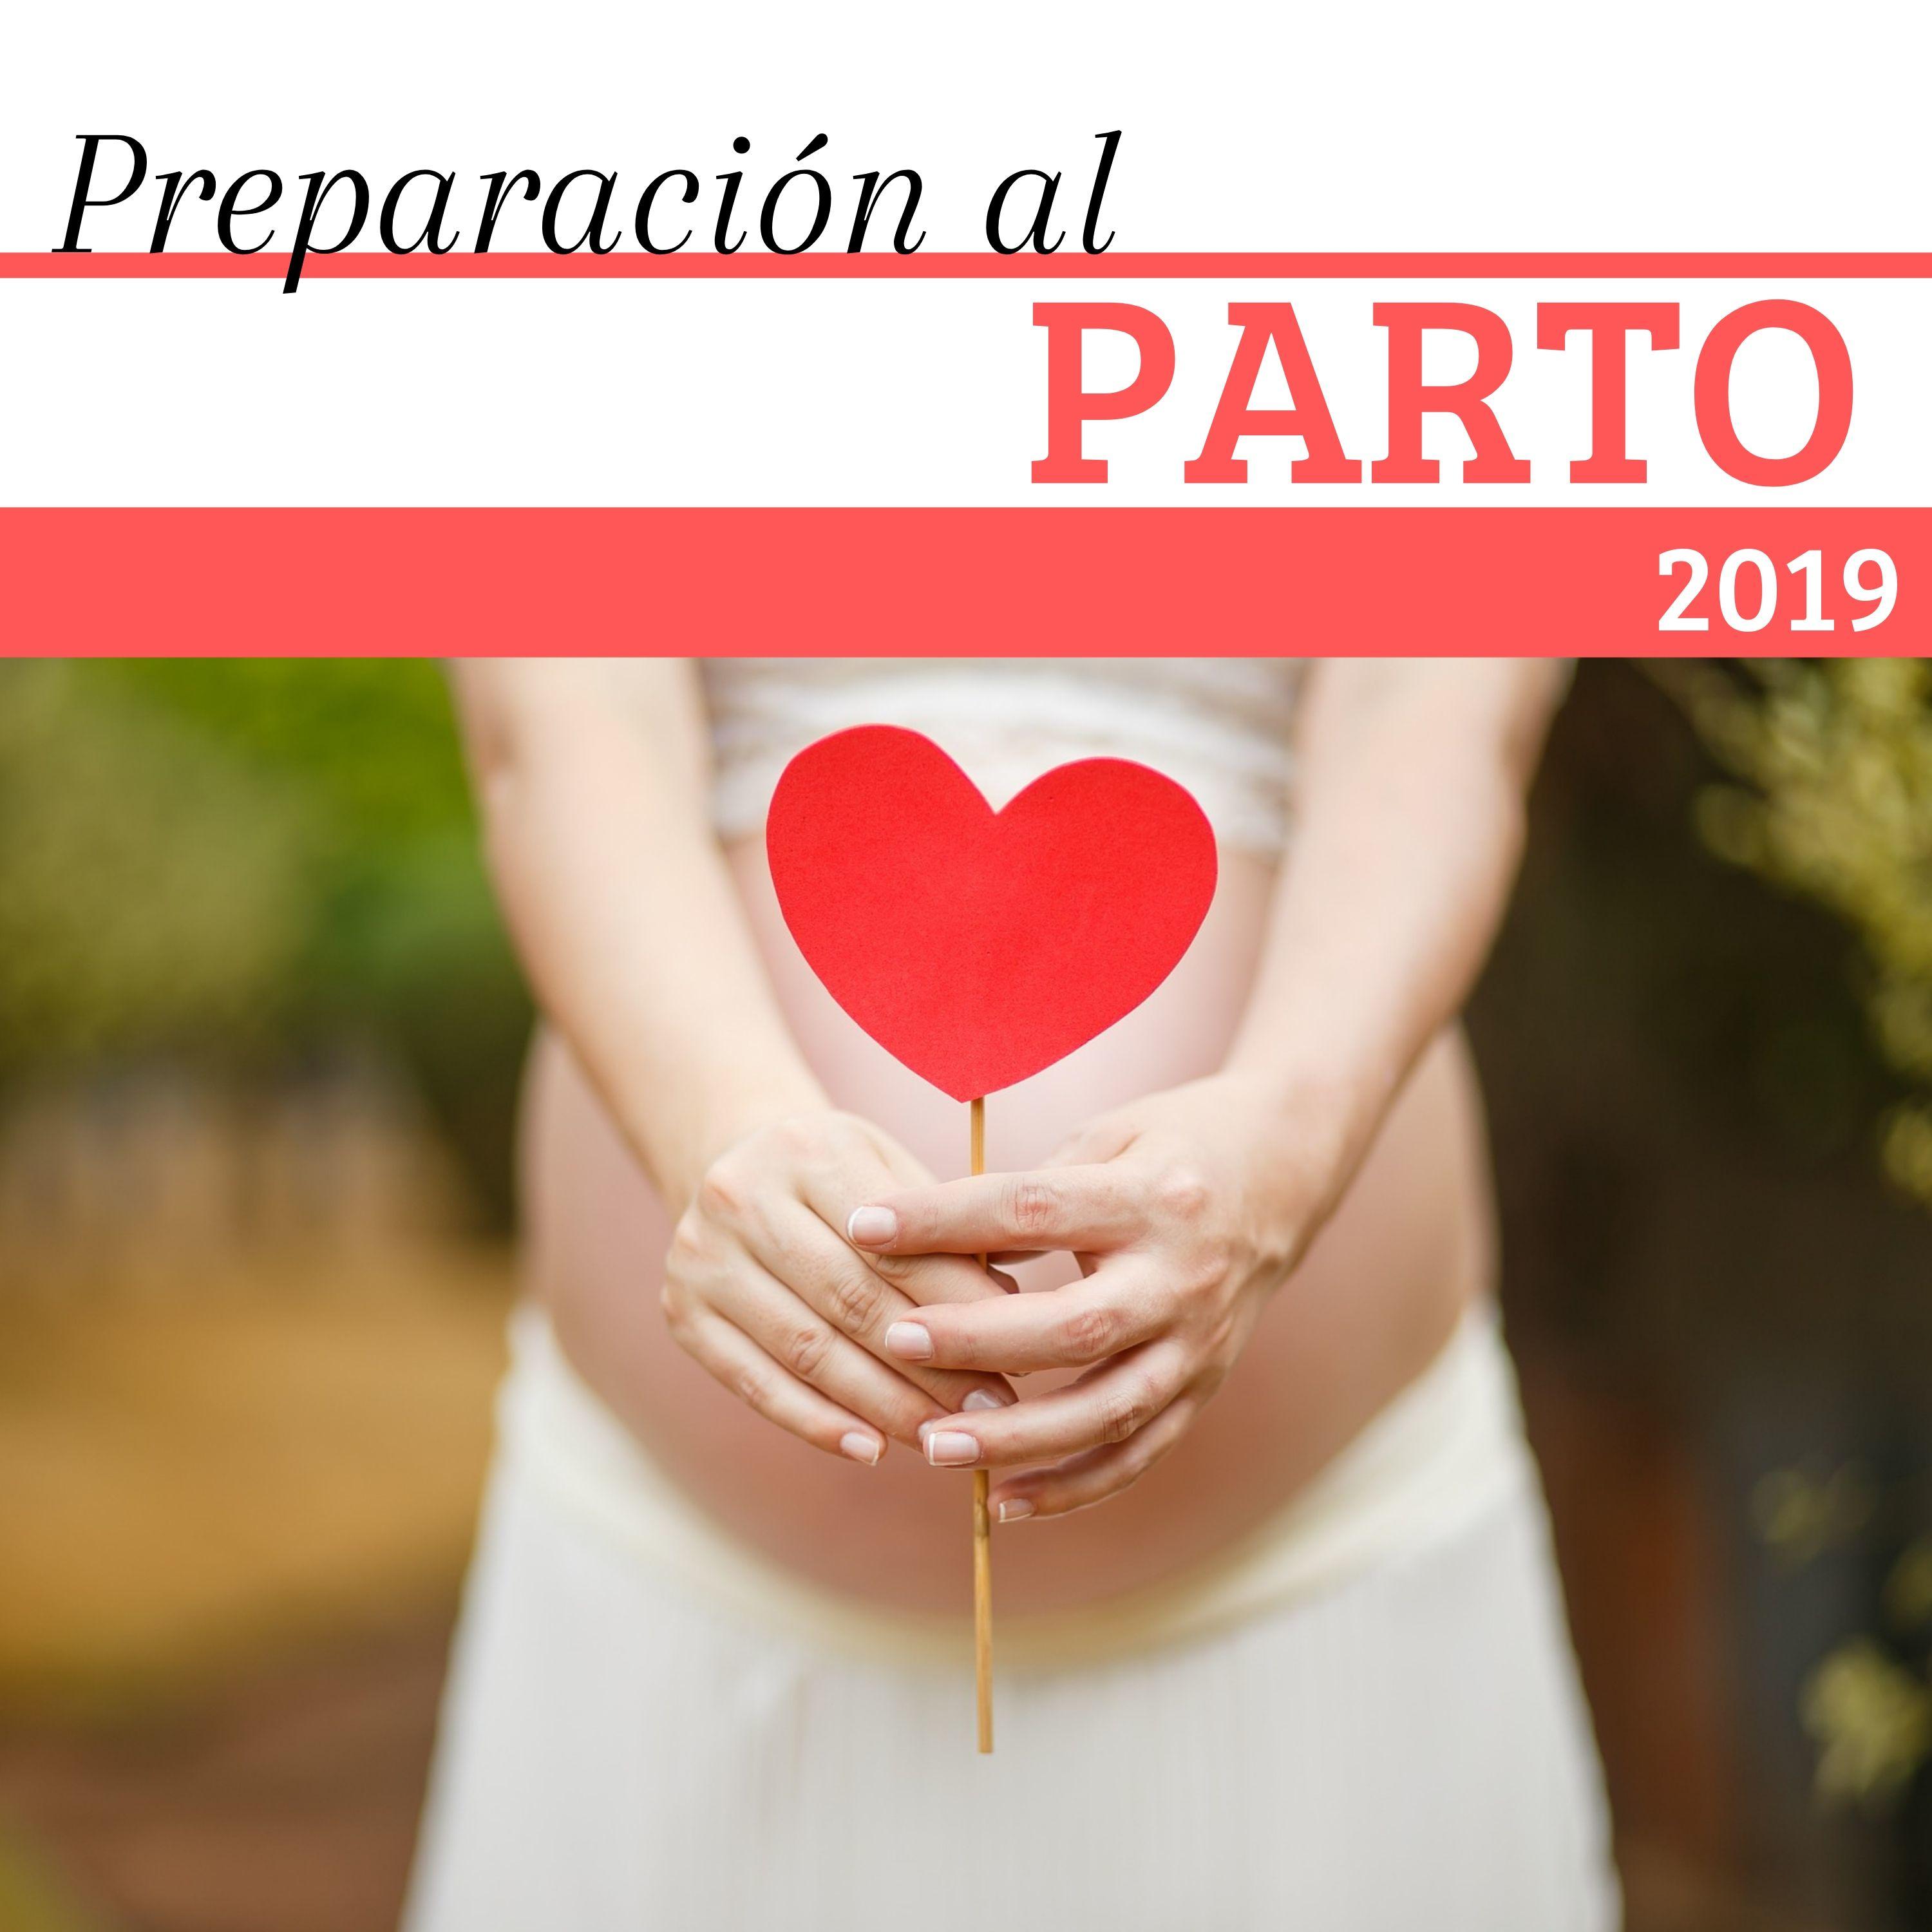 Preparacio n al Parto 2019  1 Hora de la Mejor Mu sica de Relajacio n con Sonidos de la Naturaleza Durante el Embarazo